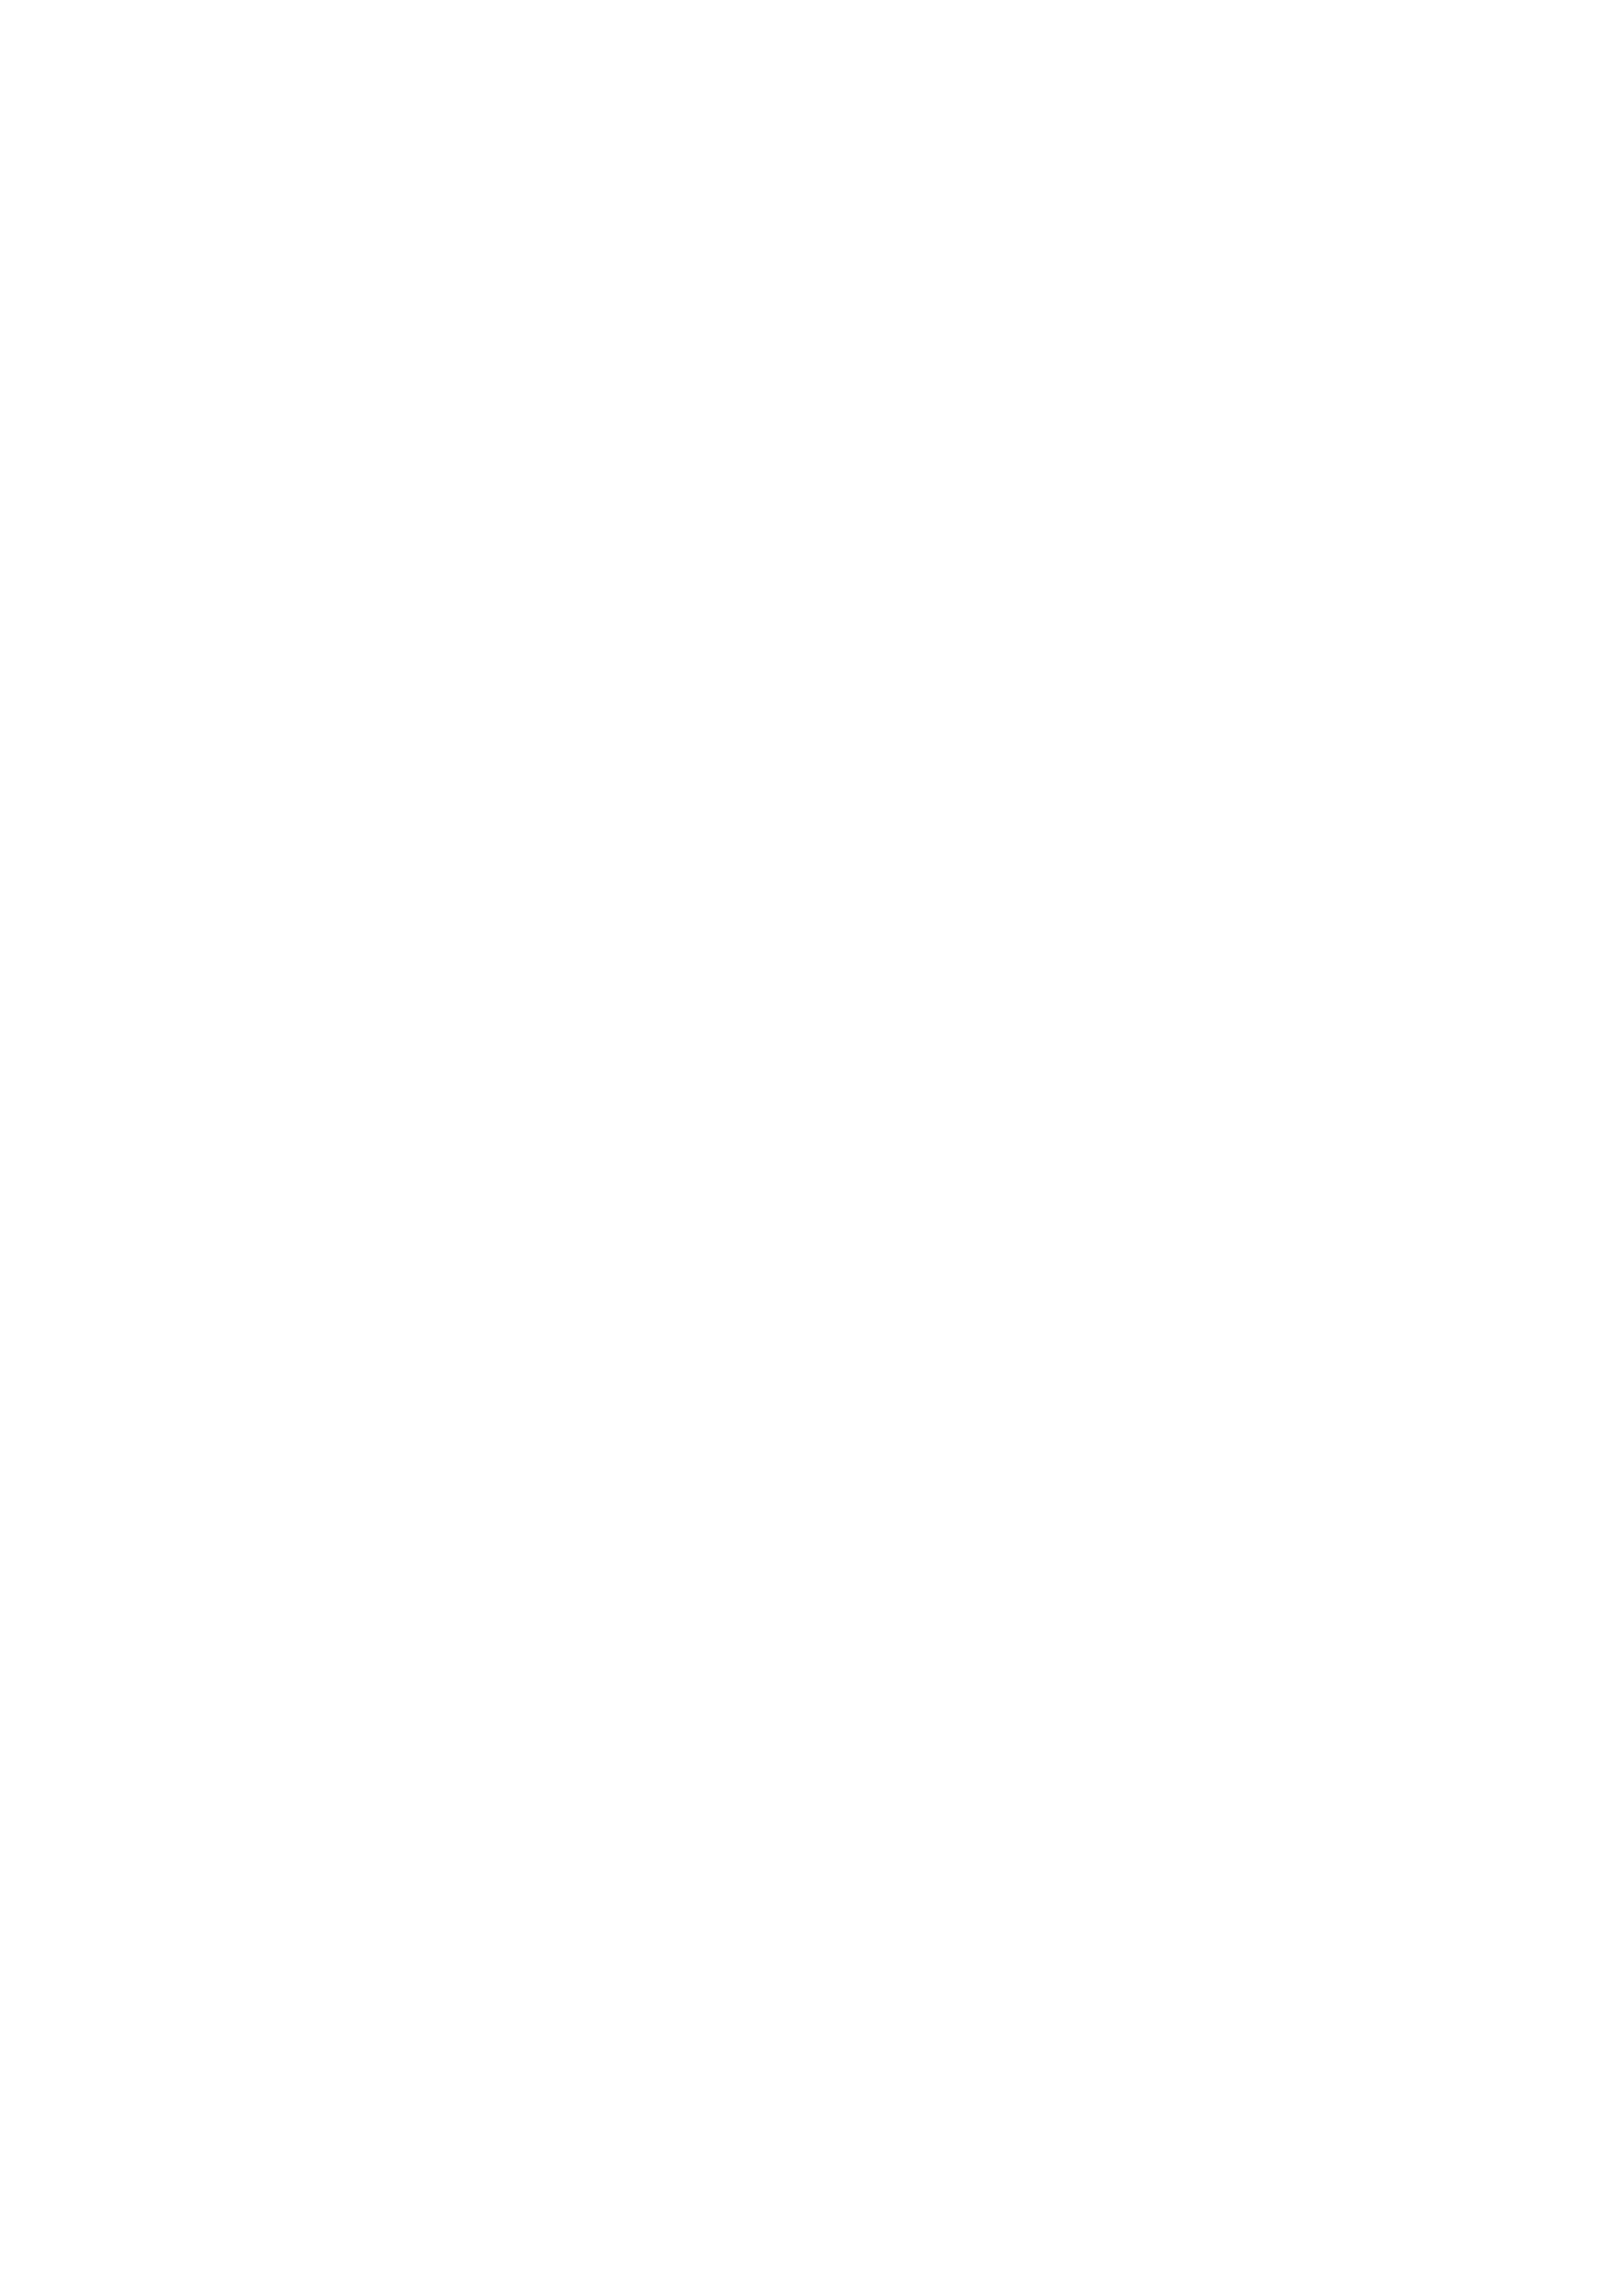 Erottaja2_logo_white